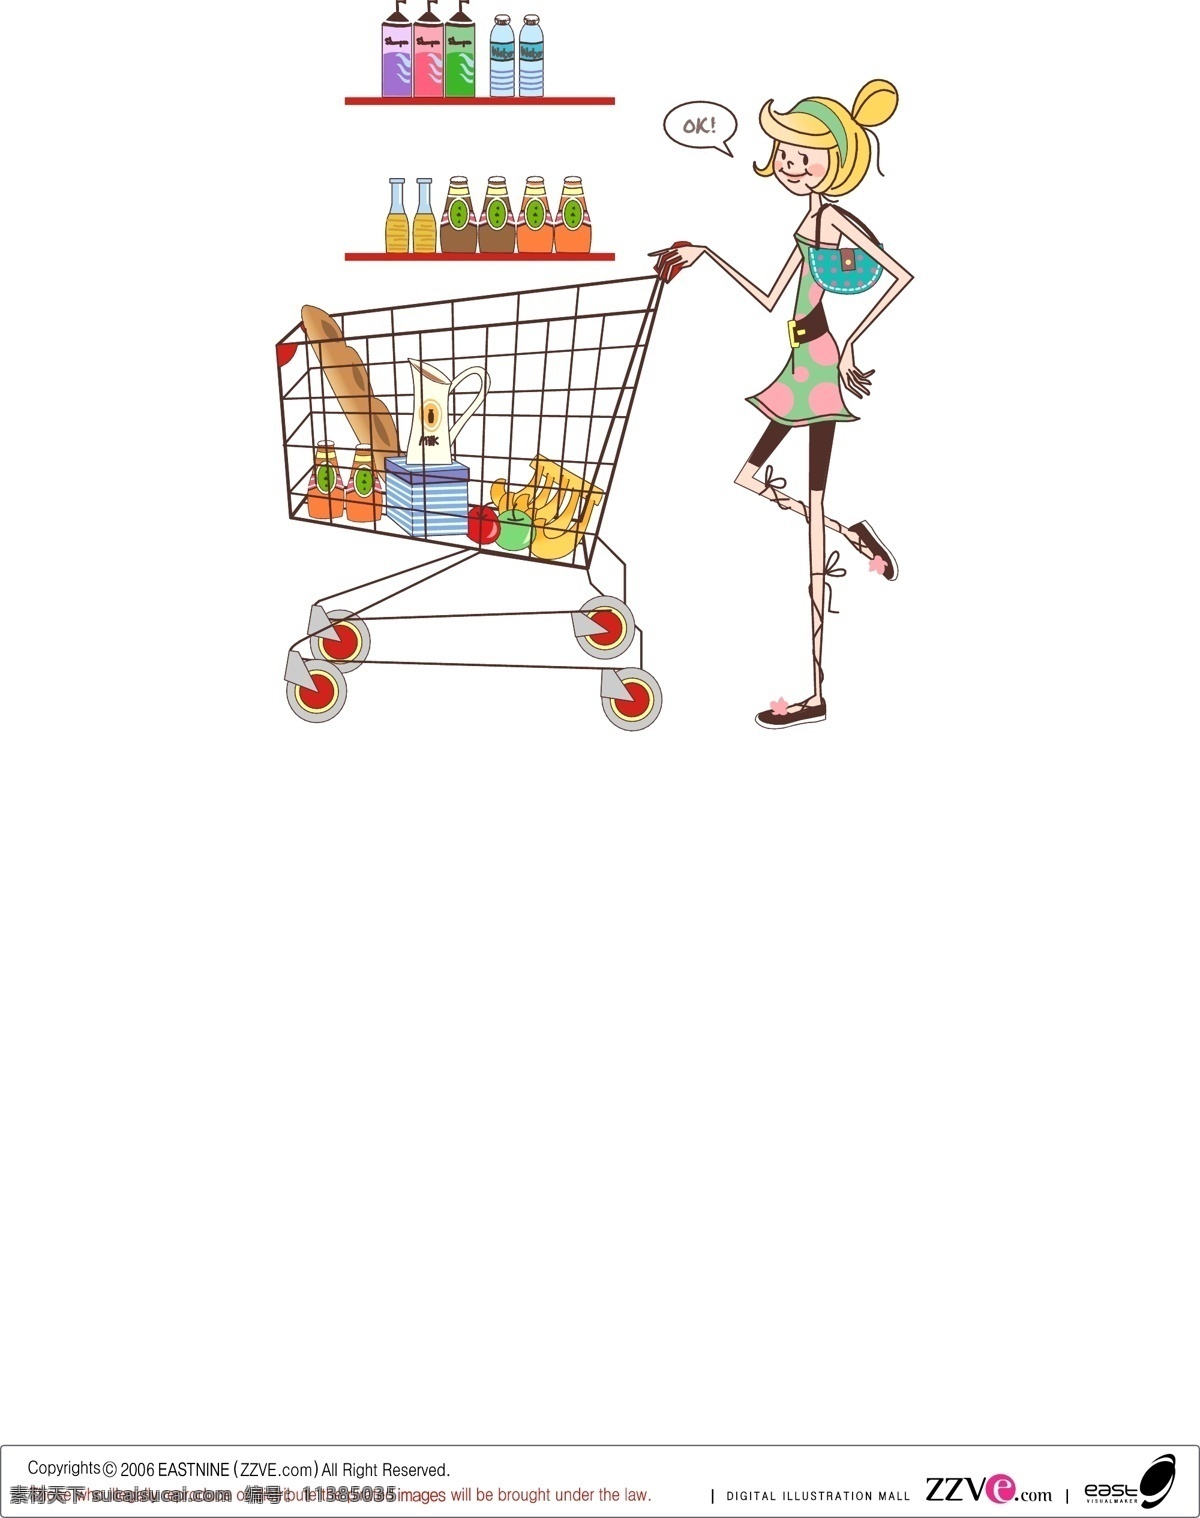 女性生活 矢量 购物 购物车 架子 面包 女性 苹果 汽水 生活用品 水果 水壶 物品 香蕉 水 fruitbox 矢量图 其他矢量图